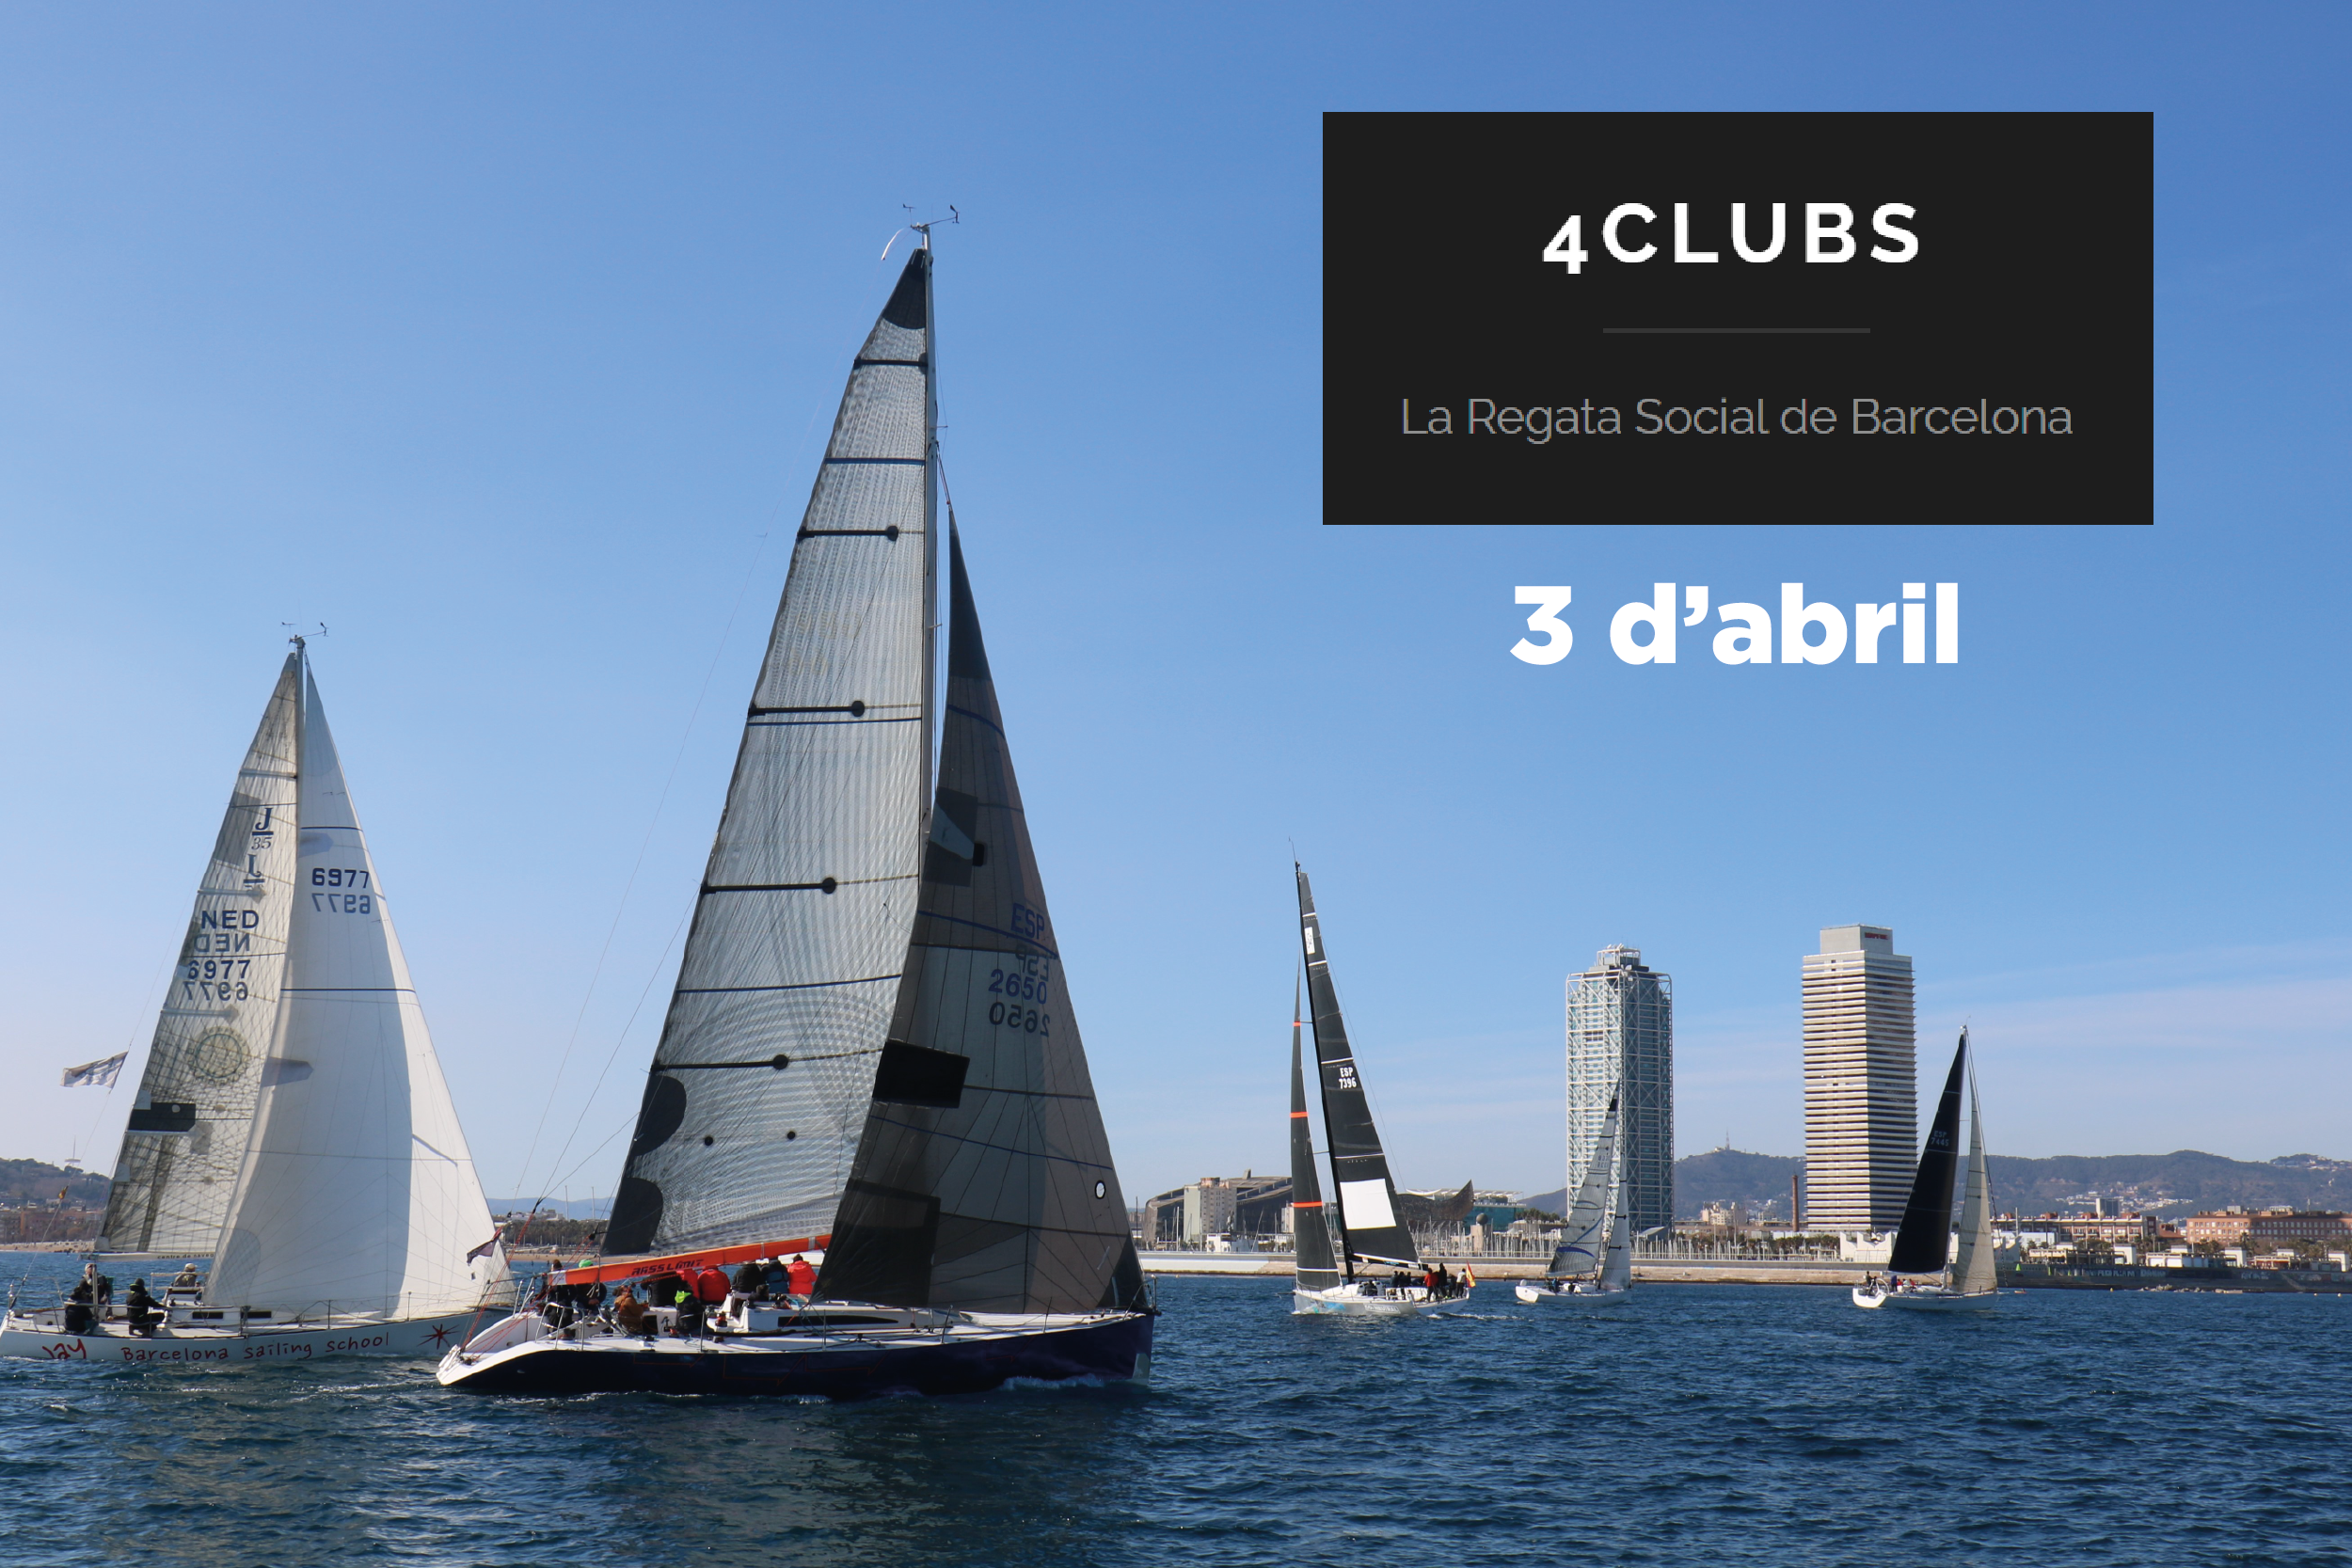 Regata Barcelona 4 Clubs, Club de Mar Port Olímpic